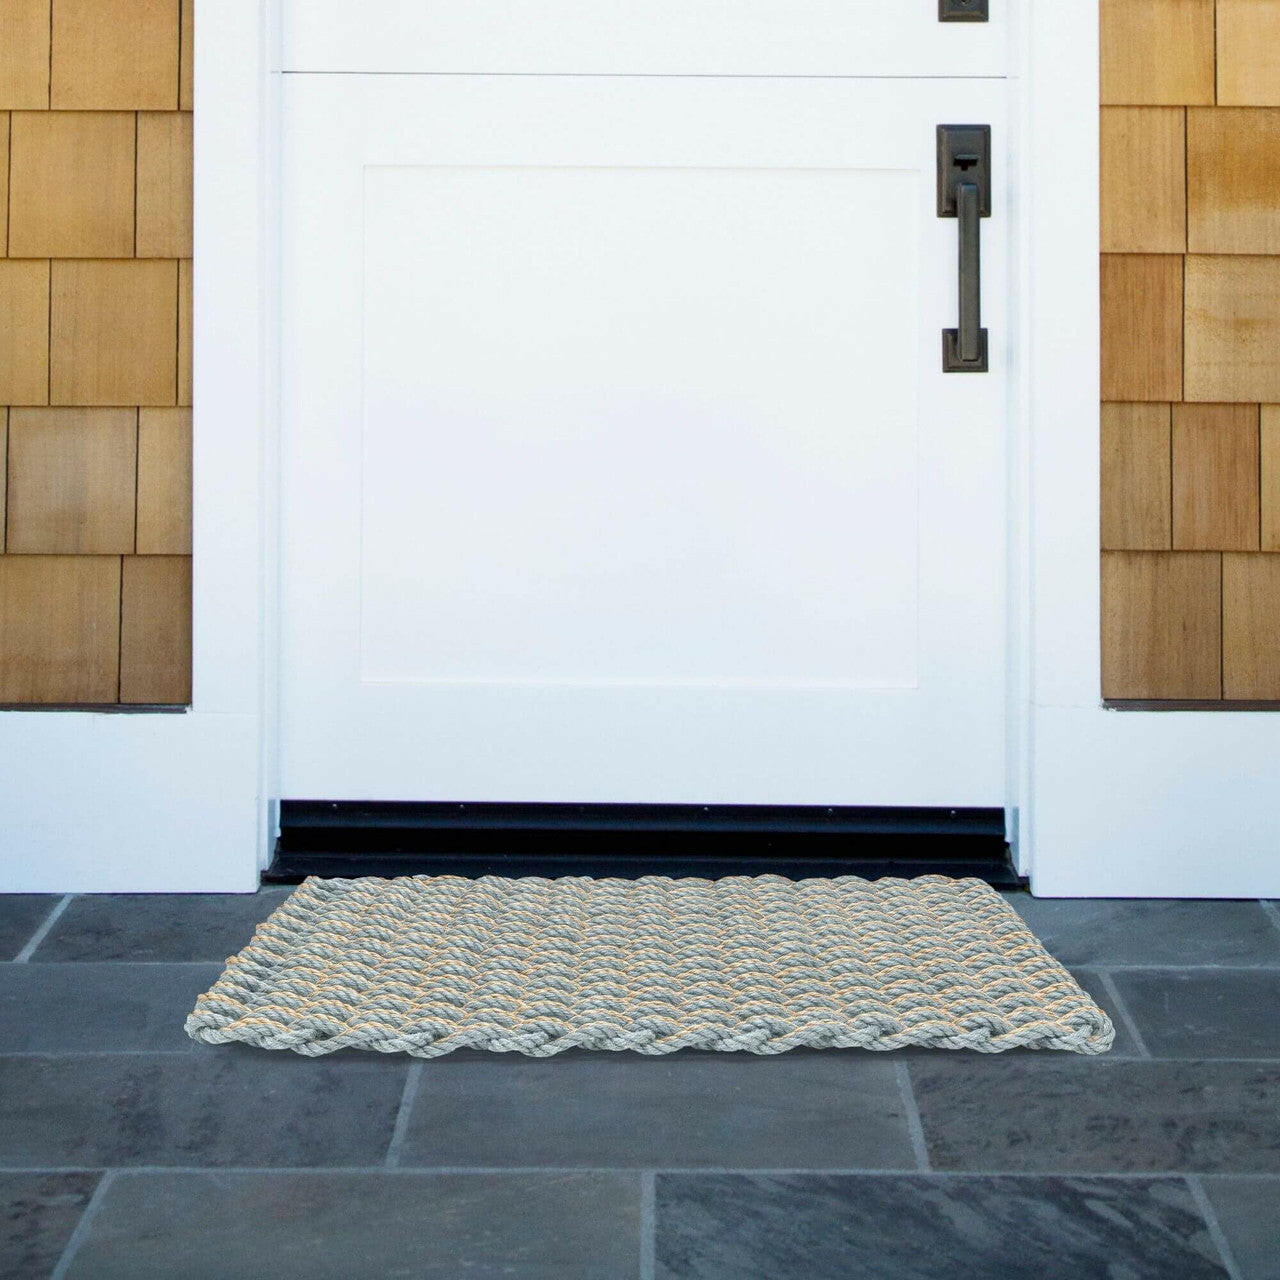 Lobster Rope Doormats, Outdoor Door Mats, Wicked Good Door Mats Made in Maine, Silver & Dark Tan Double Weave, Front Door View